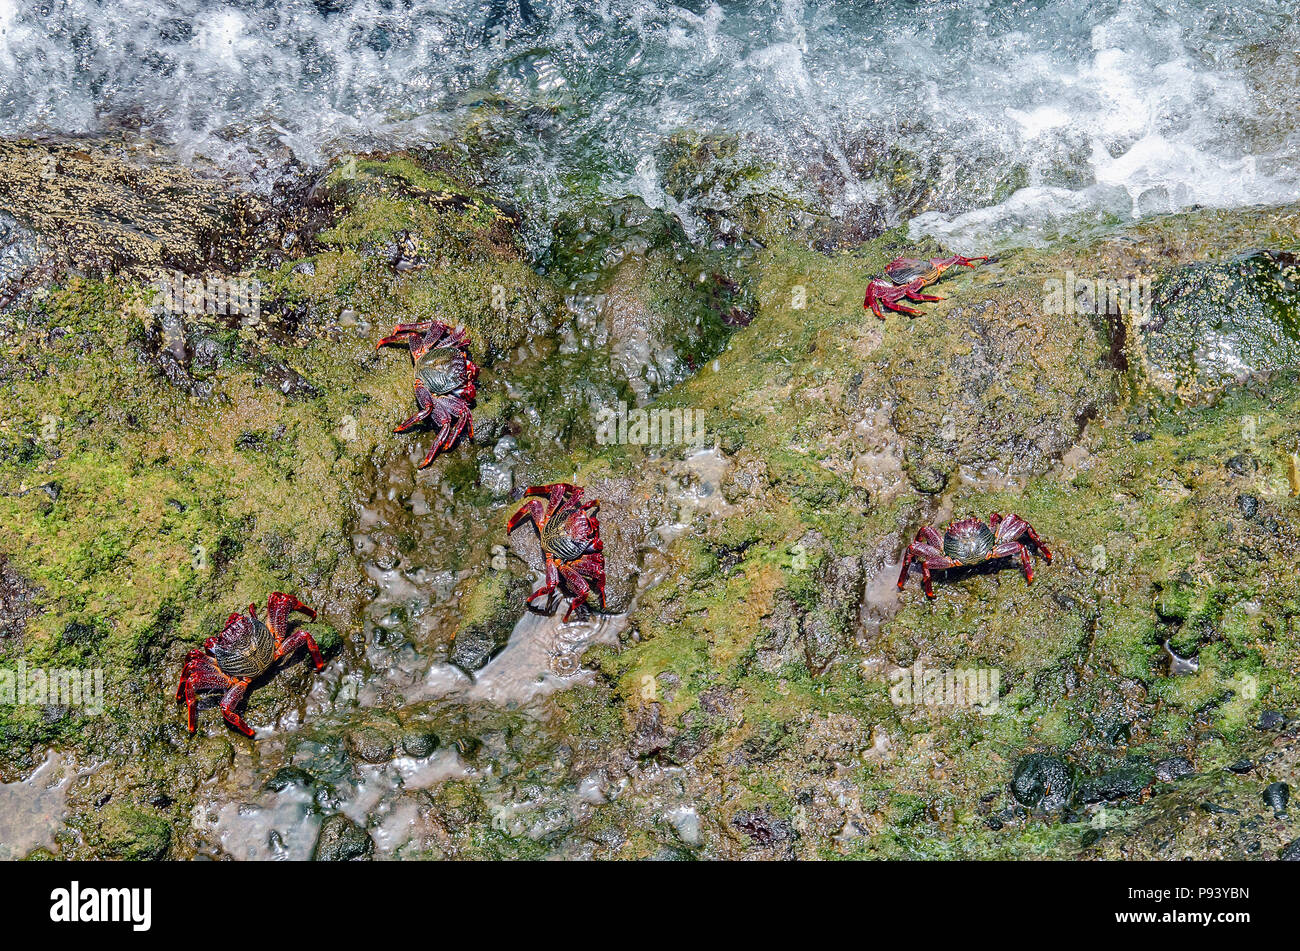 Algunos coloridos cangrejos rojos (Grapsus adscensionis) en su ambiente natural - Costa rocas cubiertas de algas verdes. Foto hecha en unidas Foto de stock